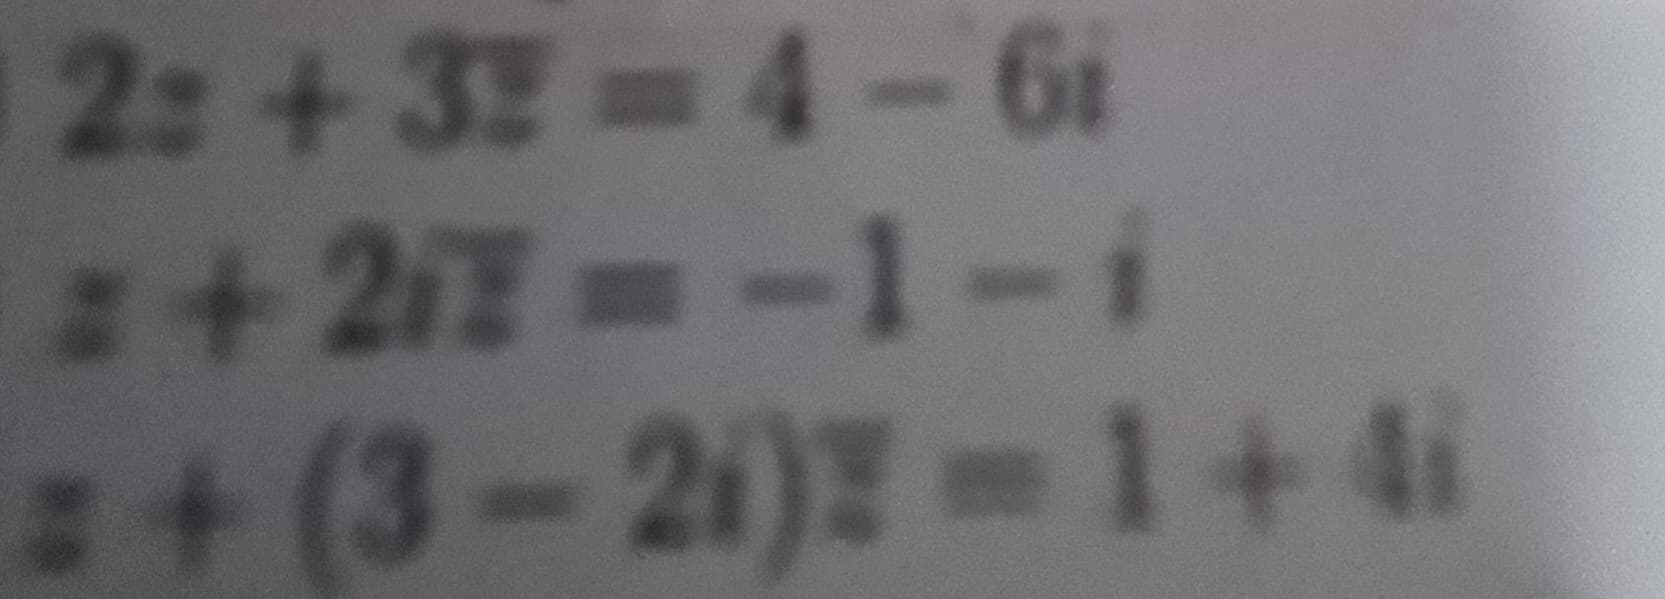 2:+32-4-61
z+21Z=-1-i
z+(3-2)Z=1+4i